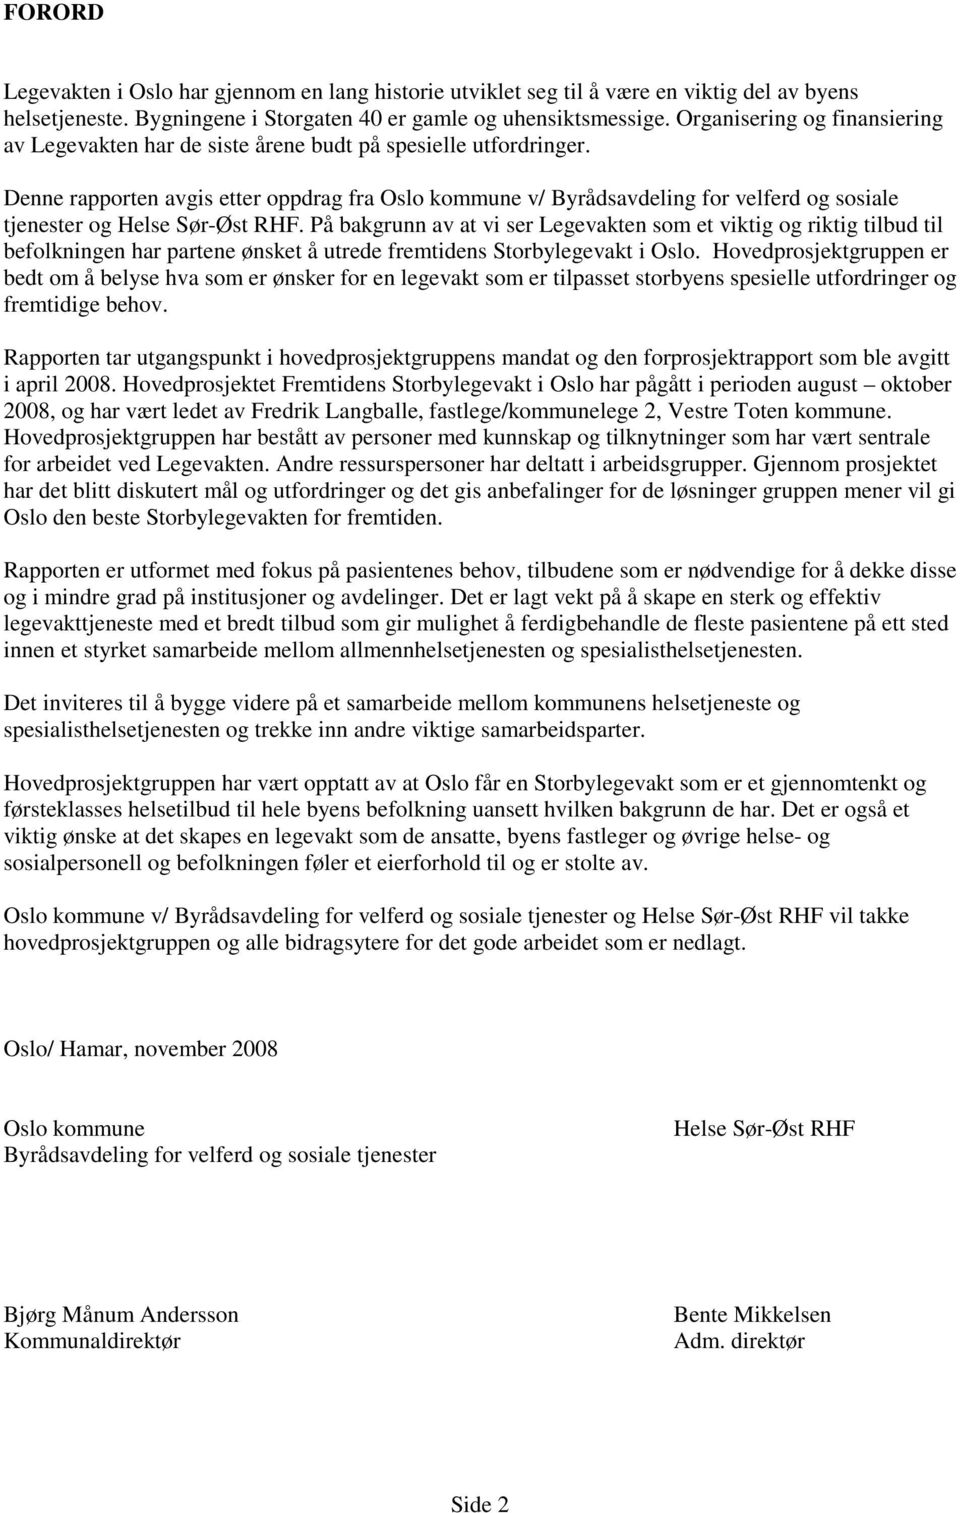 Denne rapporten avgis etter oppdrag fra Oslo kommune v/ Byrådsavdeling for velferd og sosiale tjenester og Helse Sør-Øst RHF.